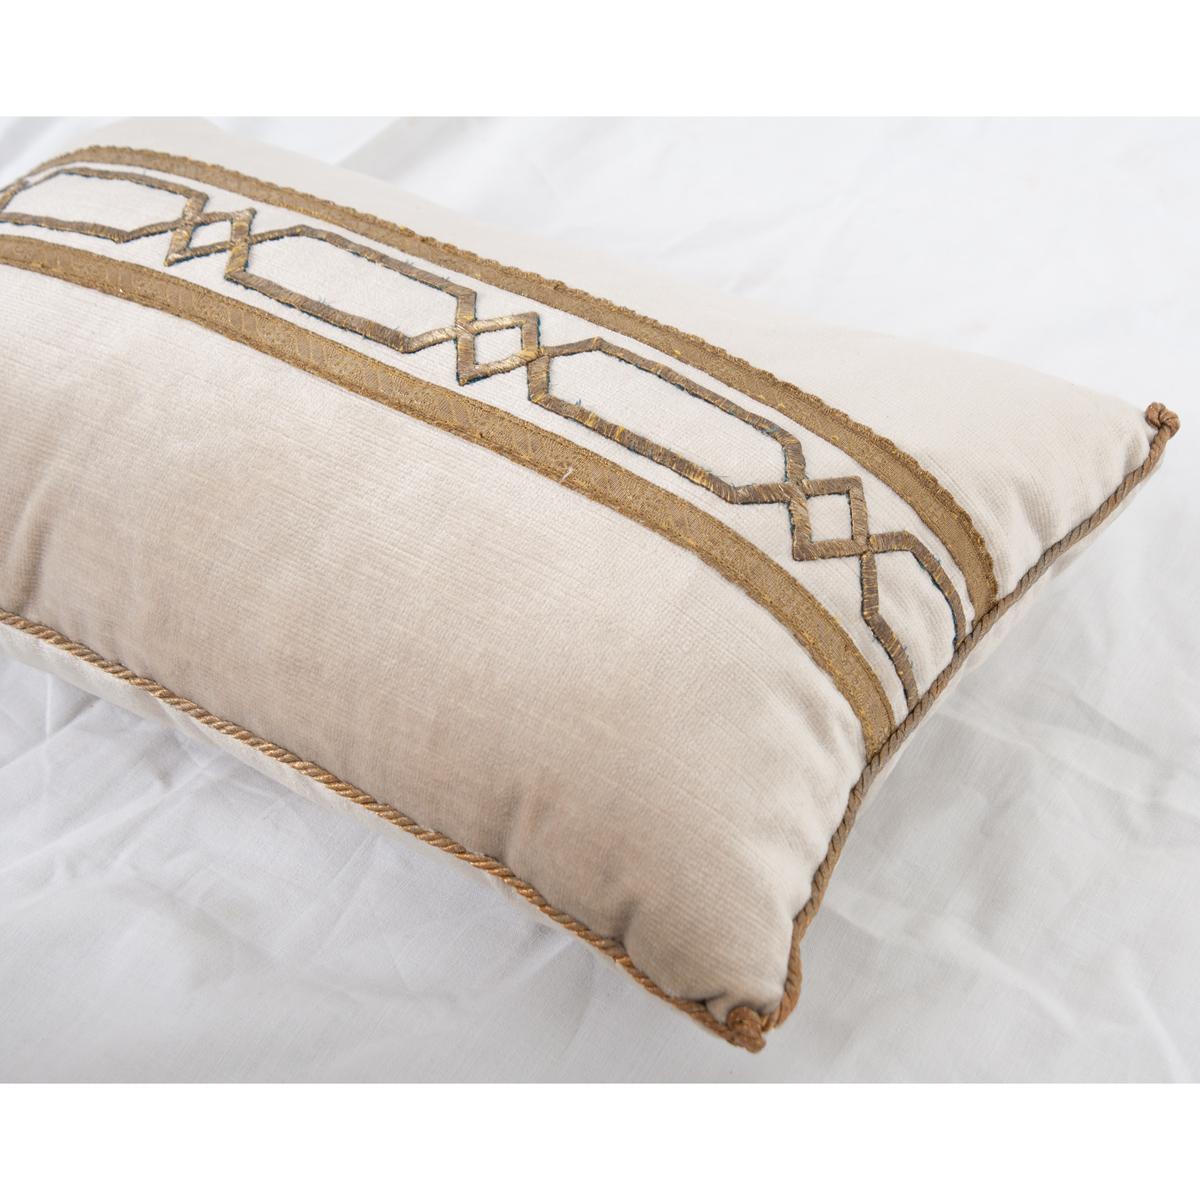 Other B. Viz Antique Textile Pillow For Sale